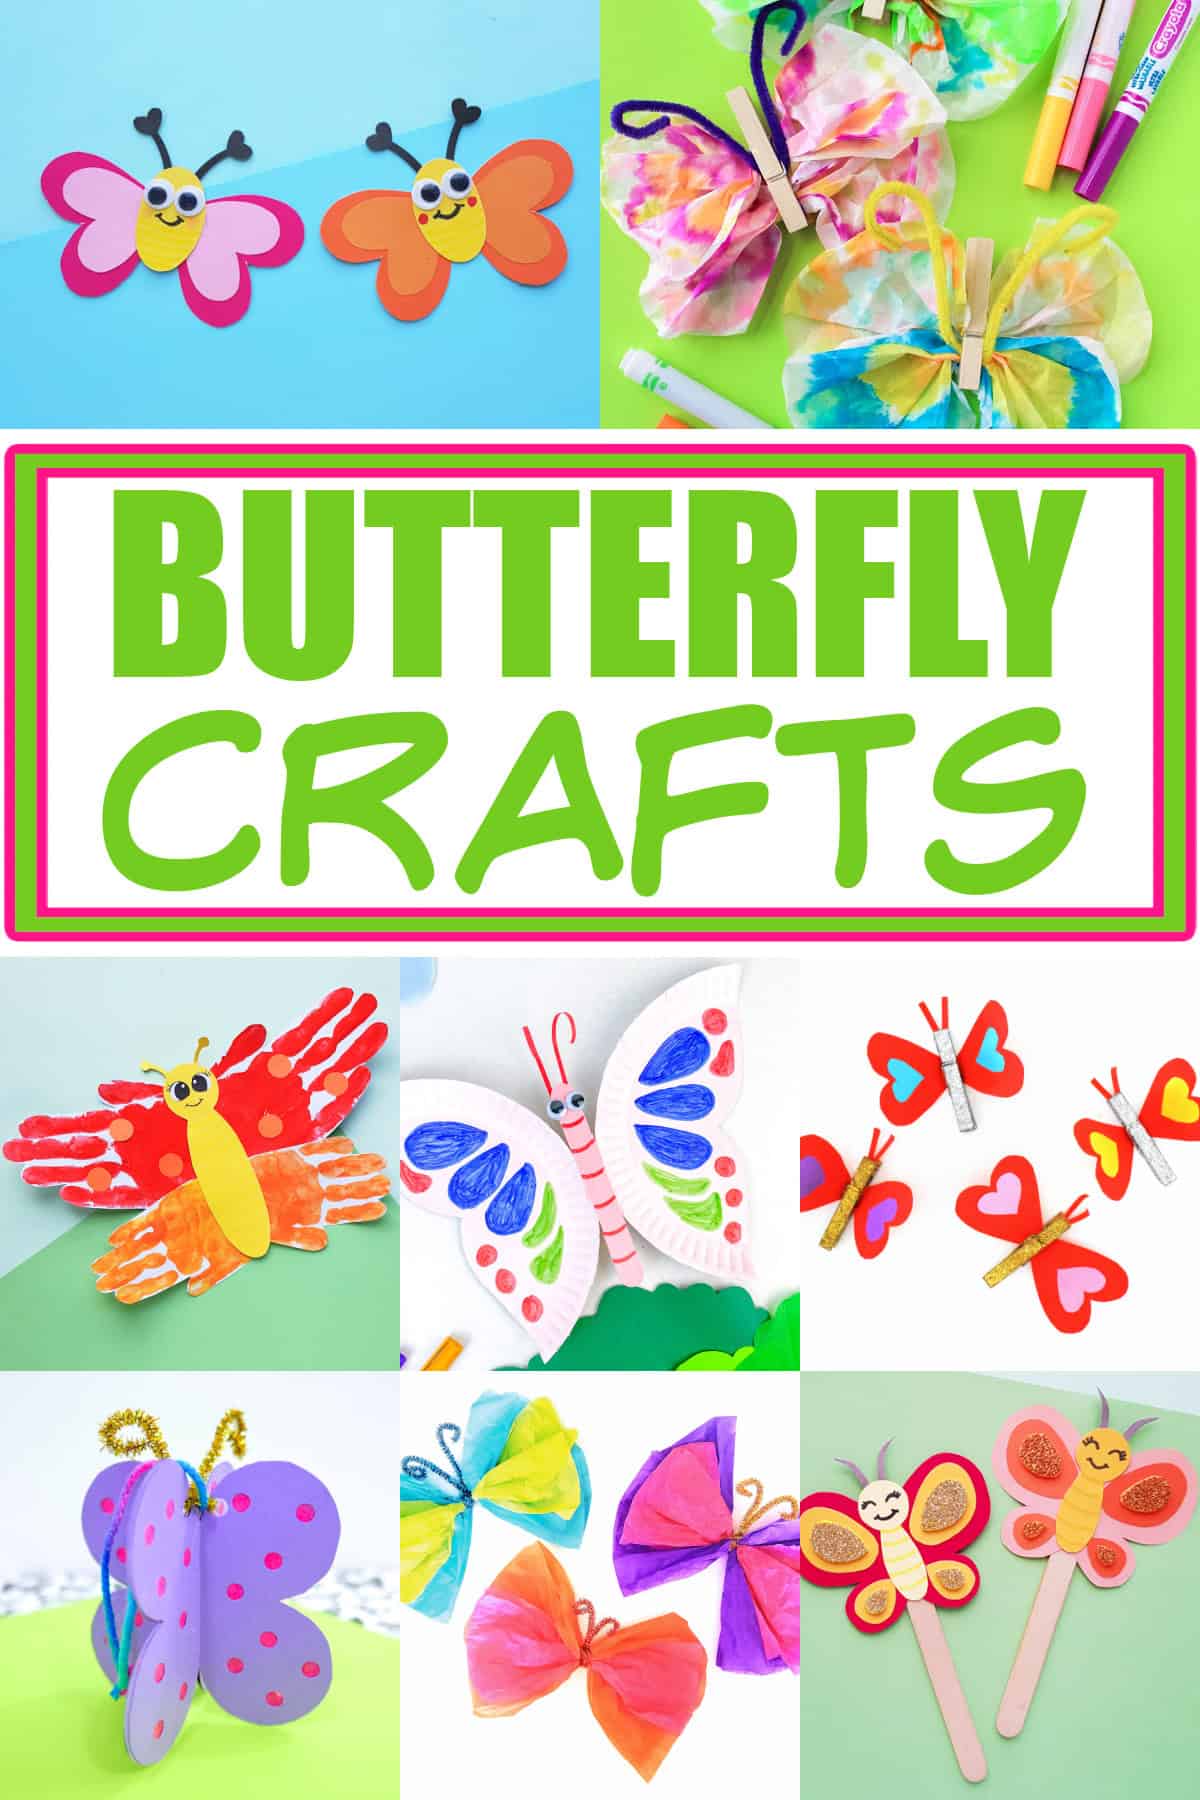 butterflies for crafts